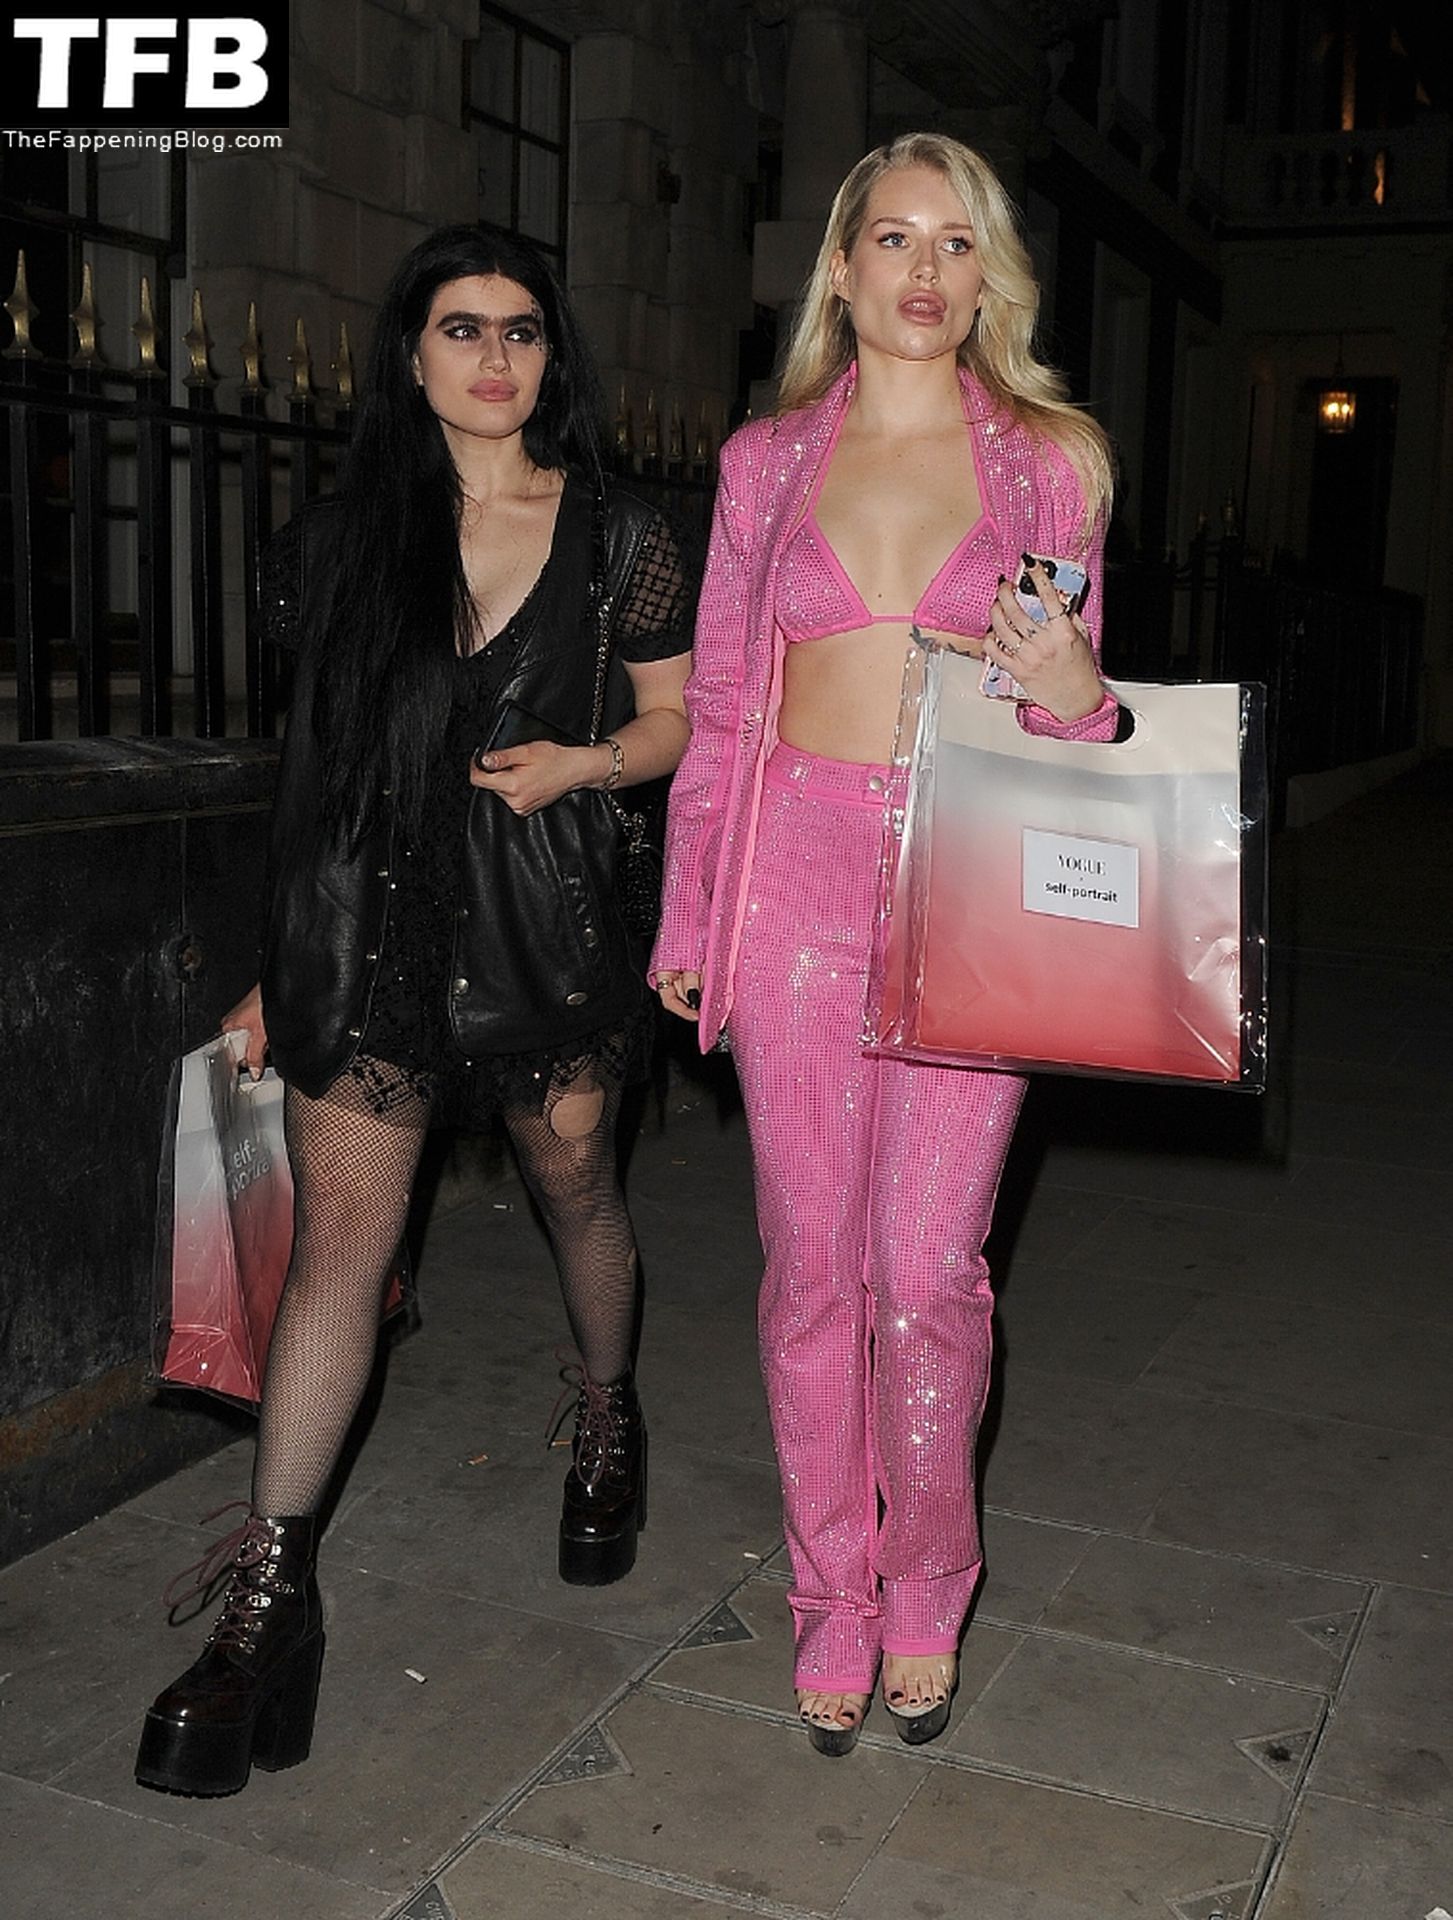 Lottie Moss & Sophia Hadjipanteli Attend the Vogue Self Portrait Party in London (33 Photos)